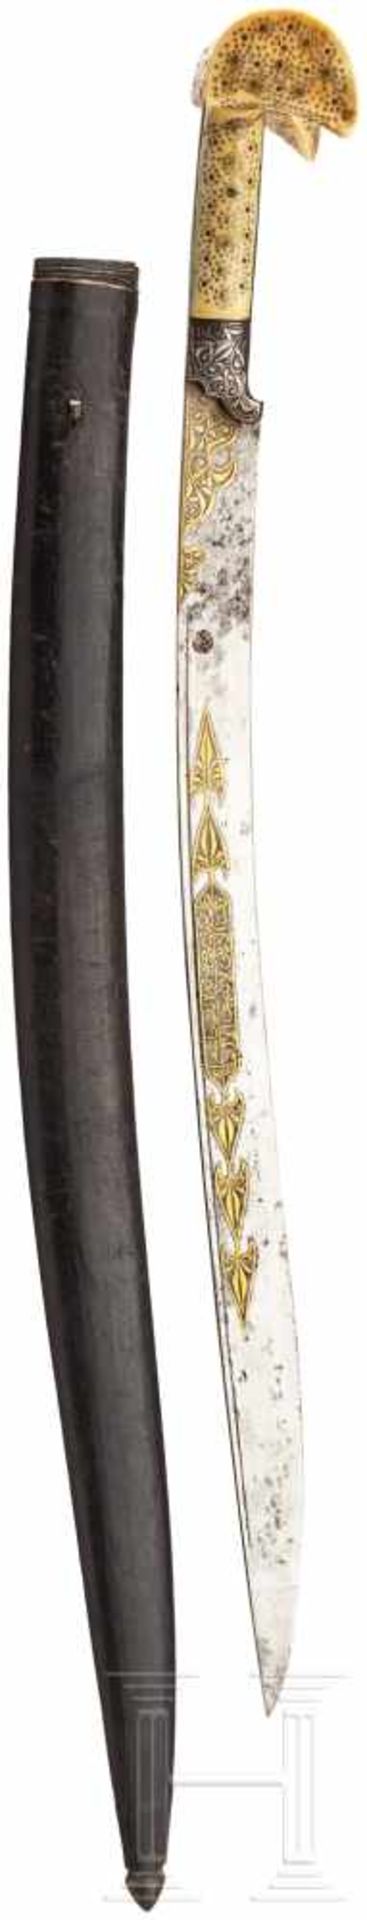 Goldtauschierter Yatagan, osmanisch, um 1800Leicht gekrümmte, am Rücken jeweils schmal gekehlte - Bild 2 aus 2